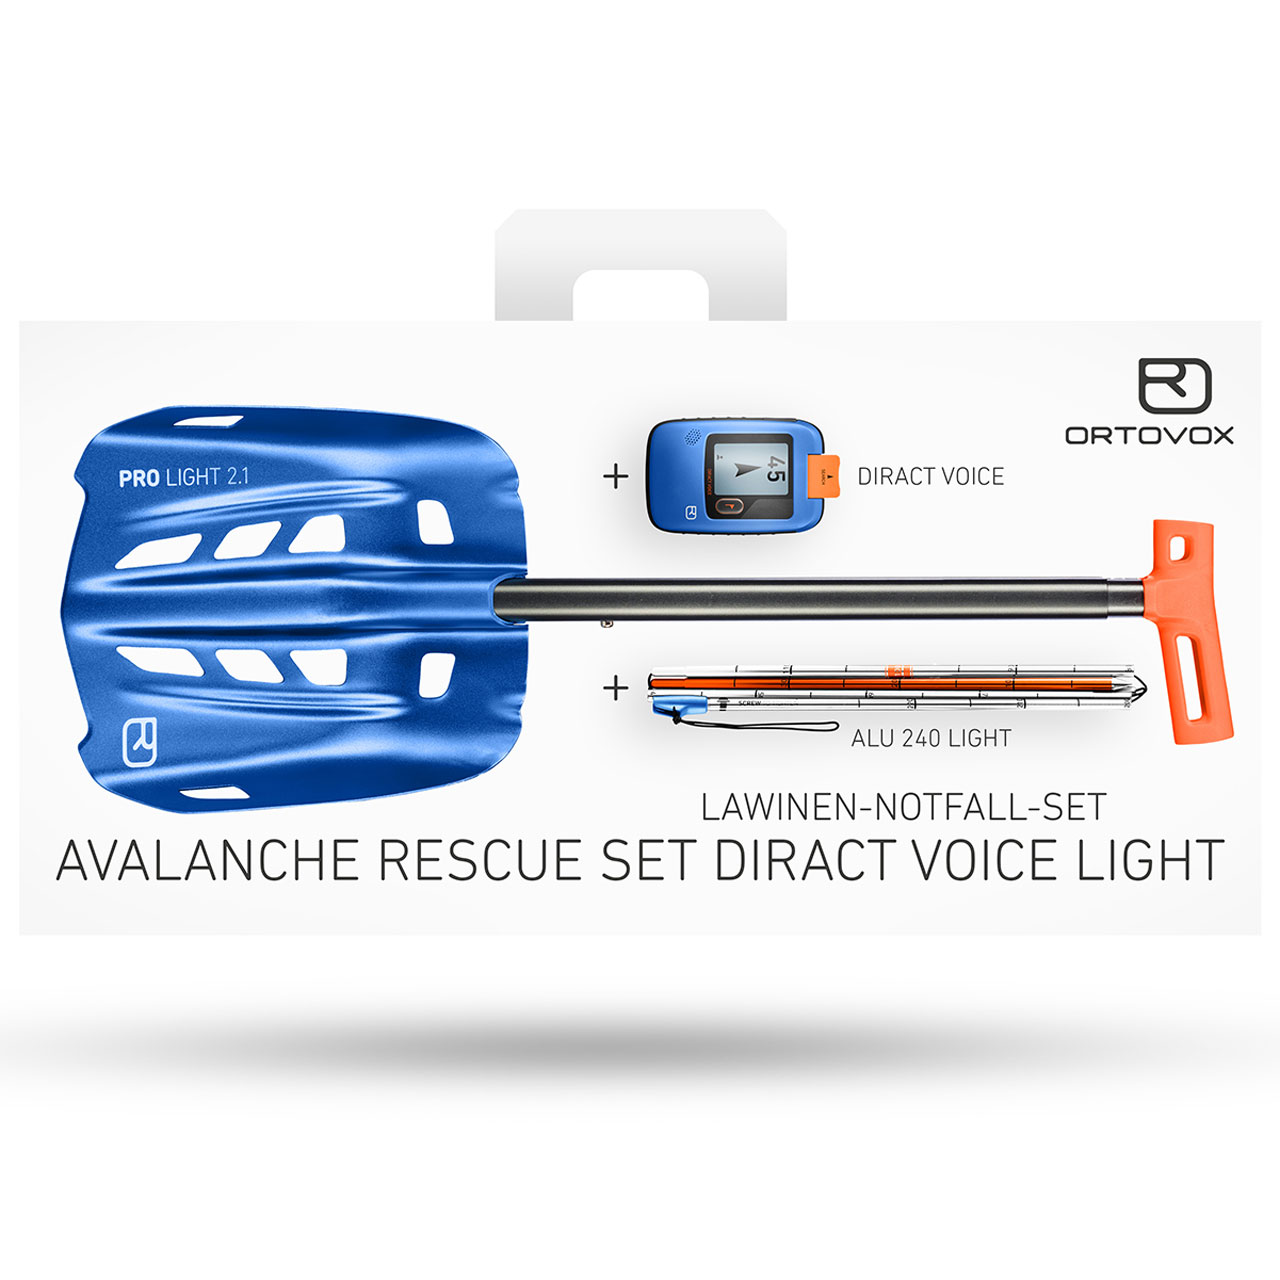 Avalanche Rescue Set Diract Voice Light